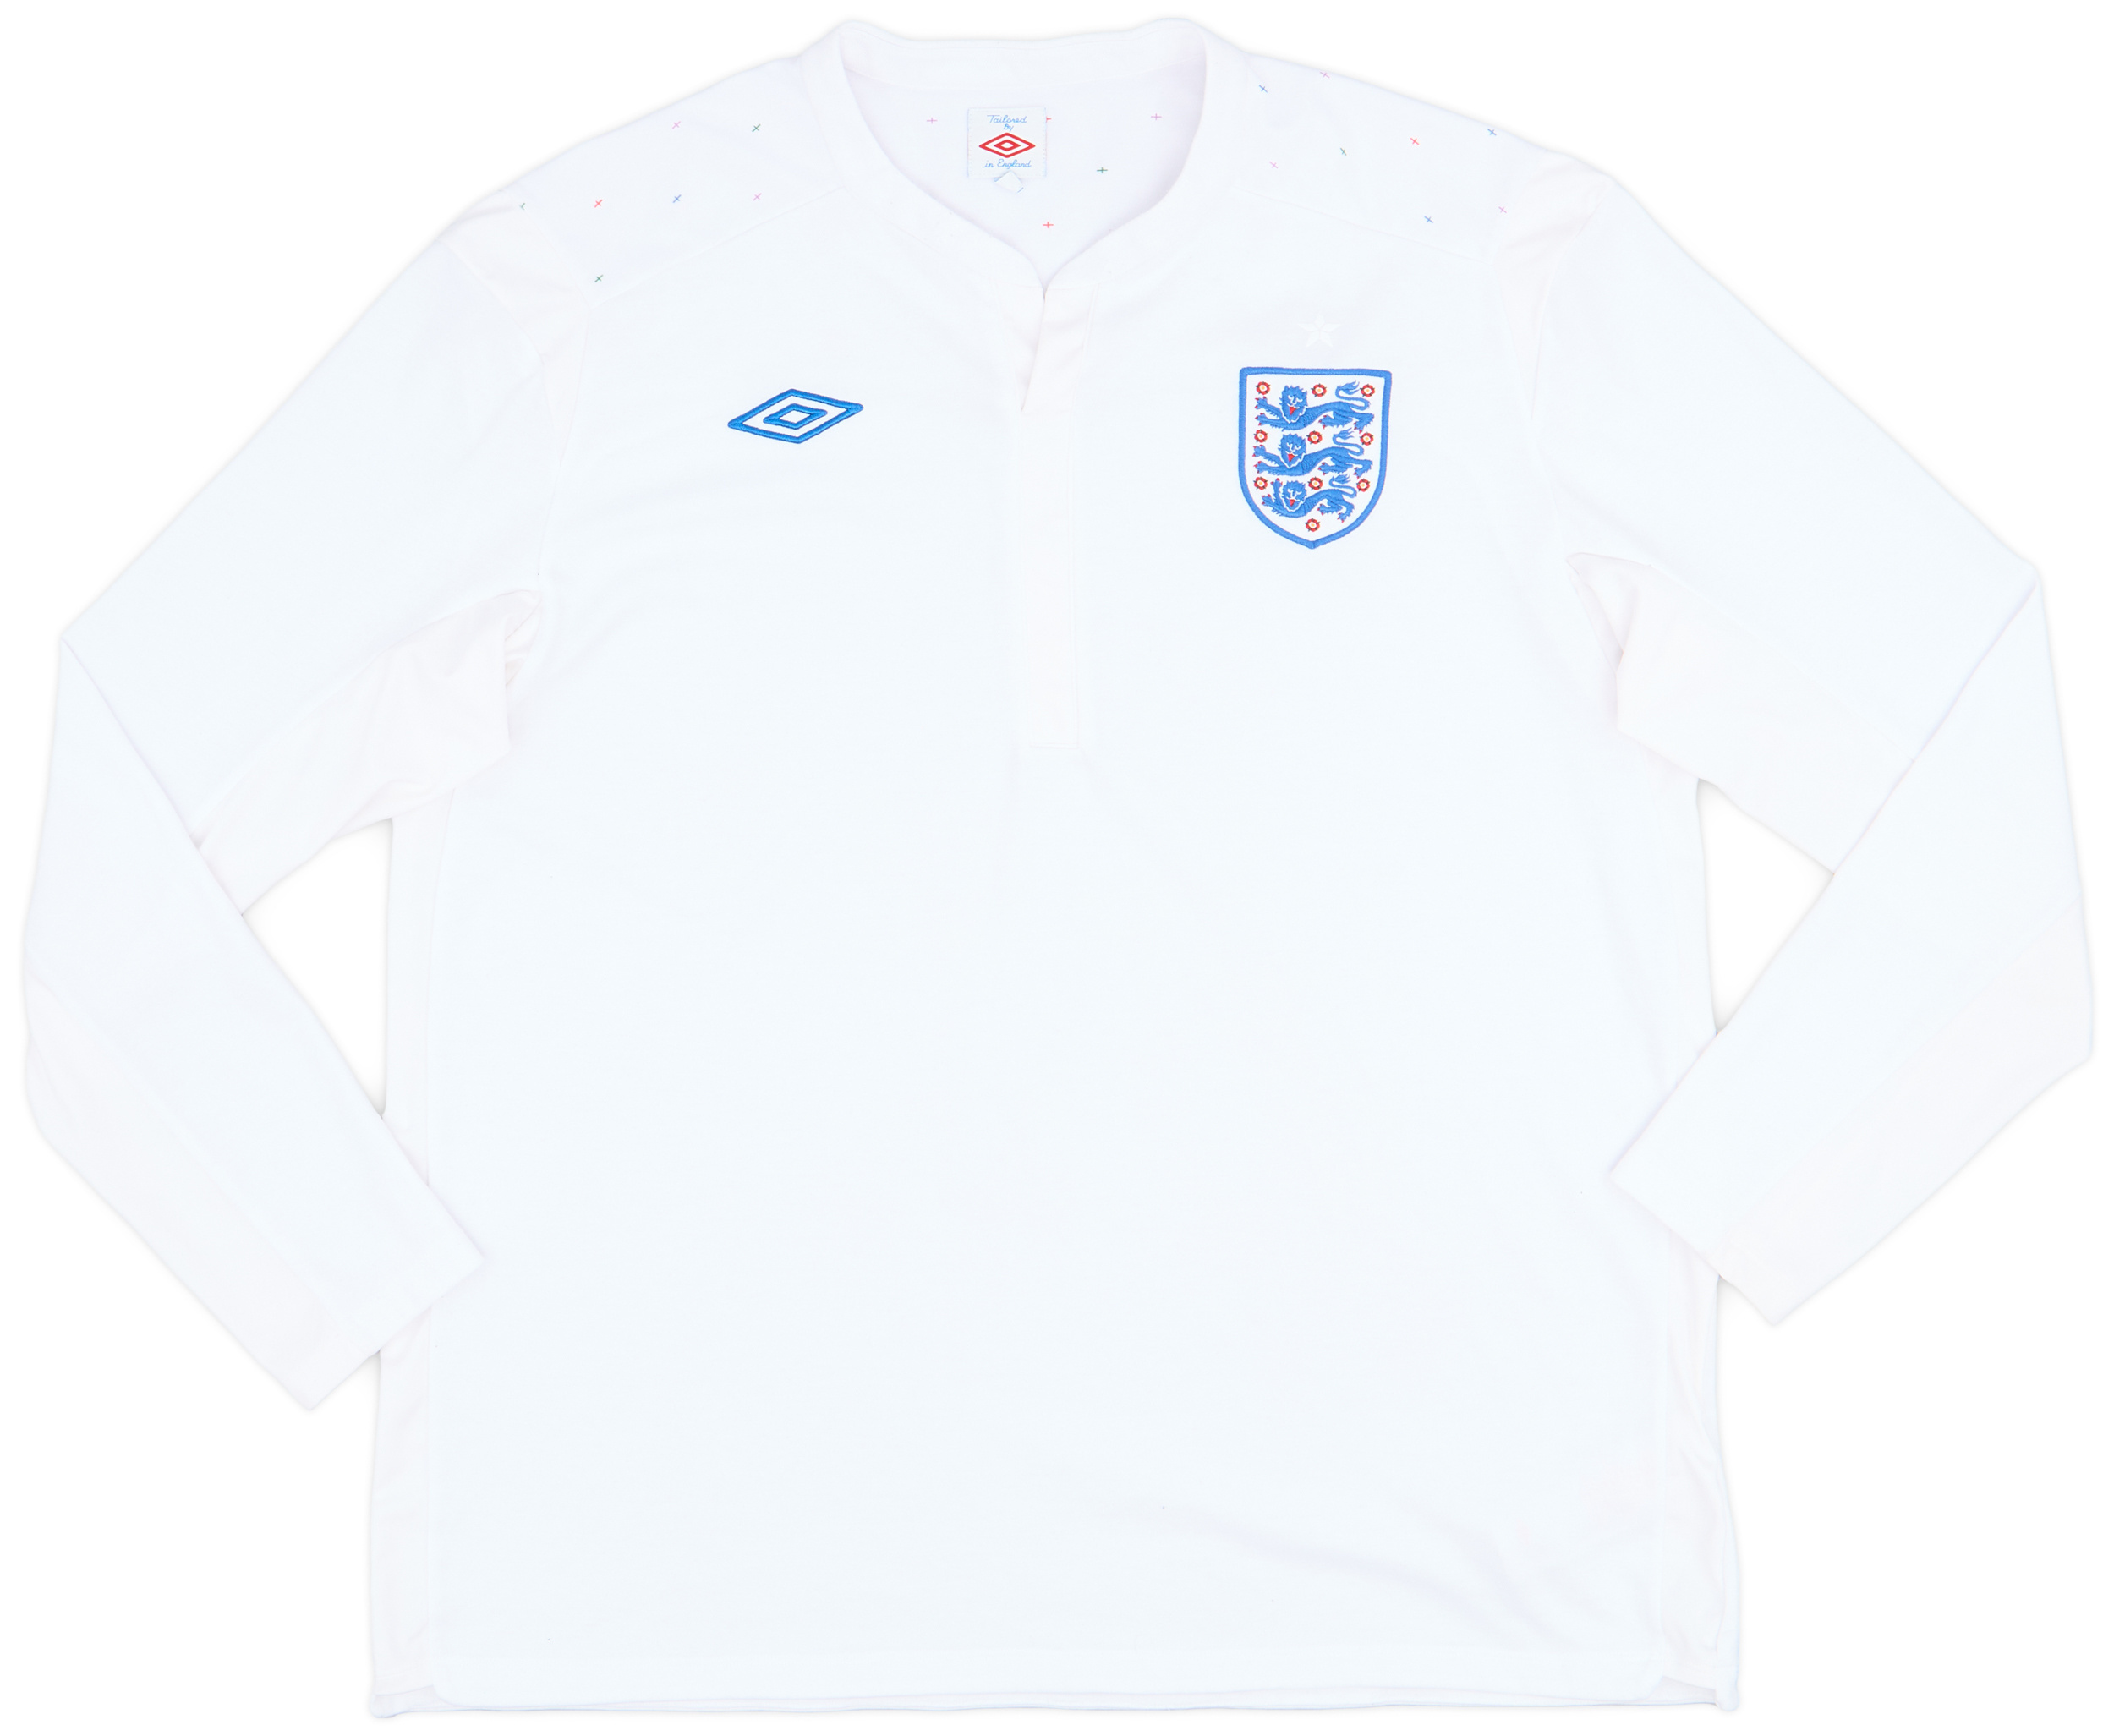 2010-11 England Home Shirt - 9/10 - ()